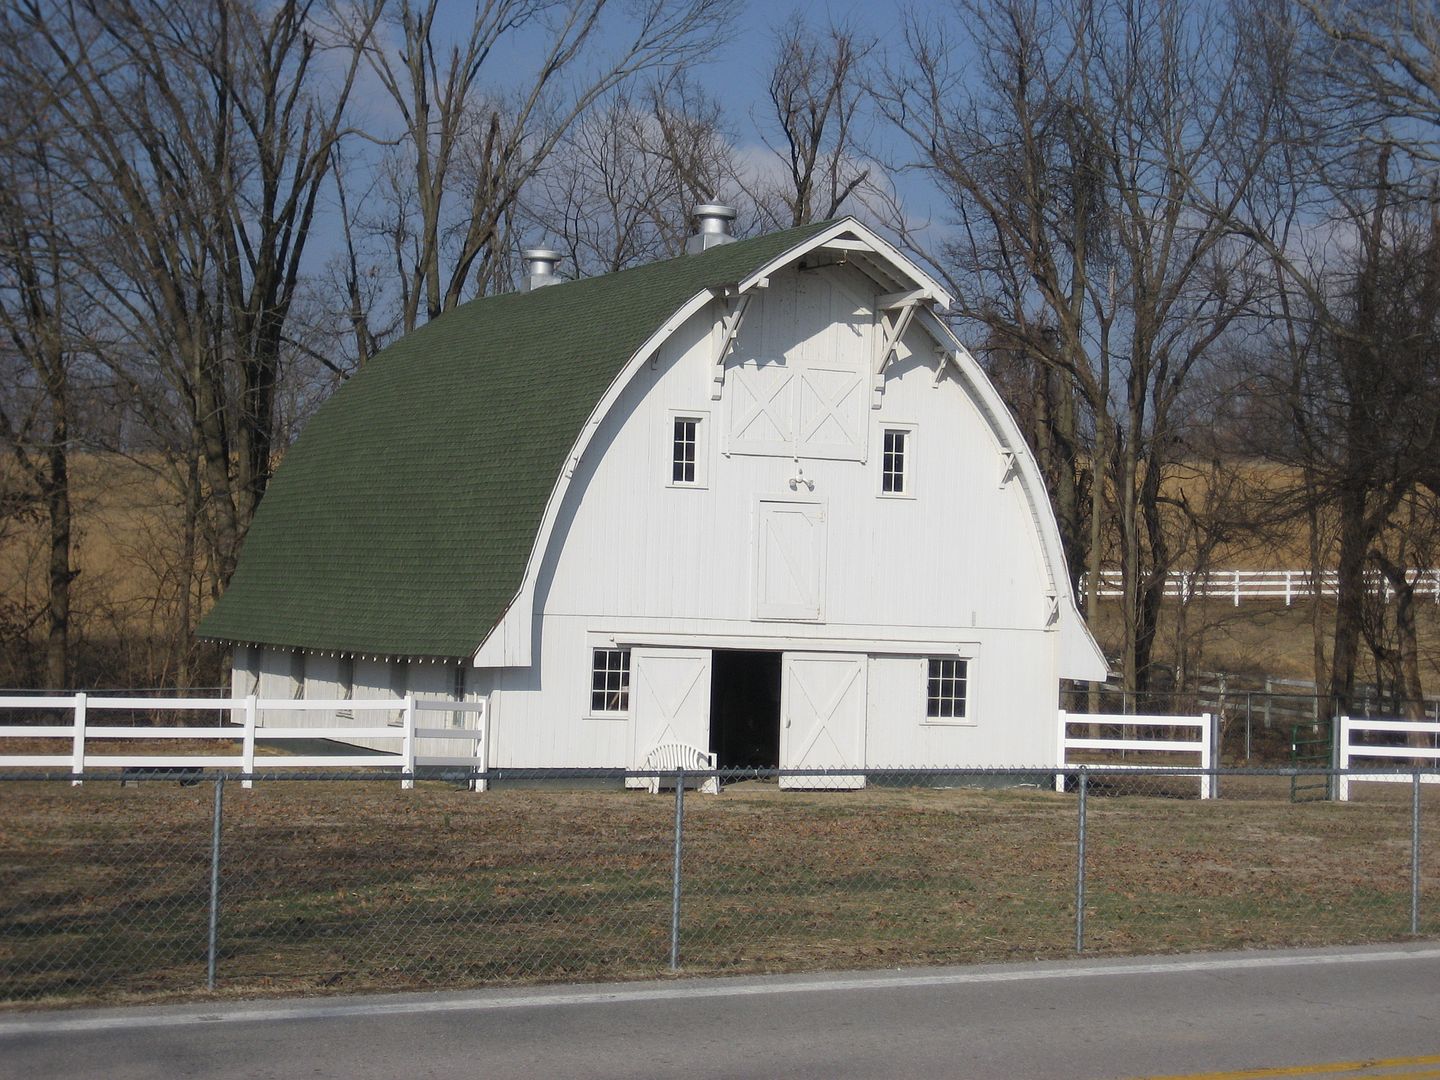 Sears Cyclone Barn in Pulaski, Illinois. 